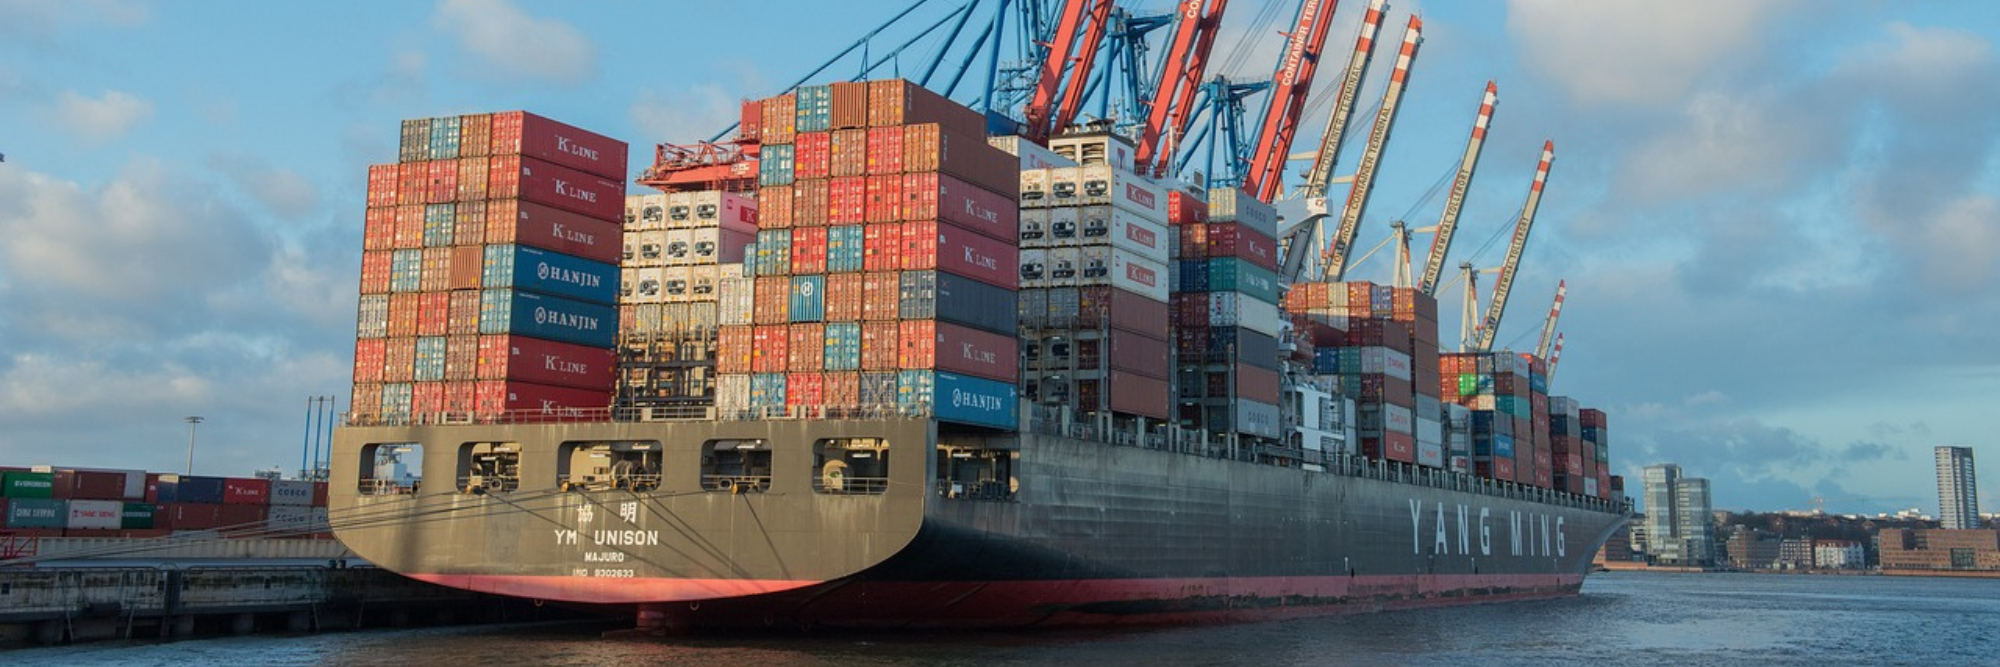 Le transport maritime navigue t-il vers la décarbonation ?